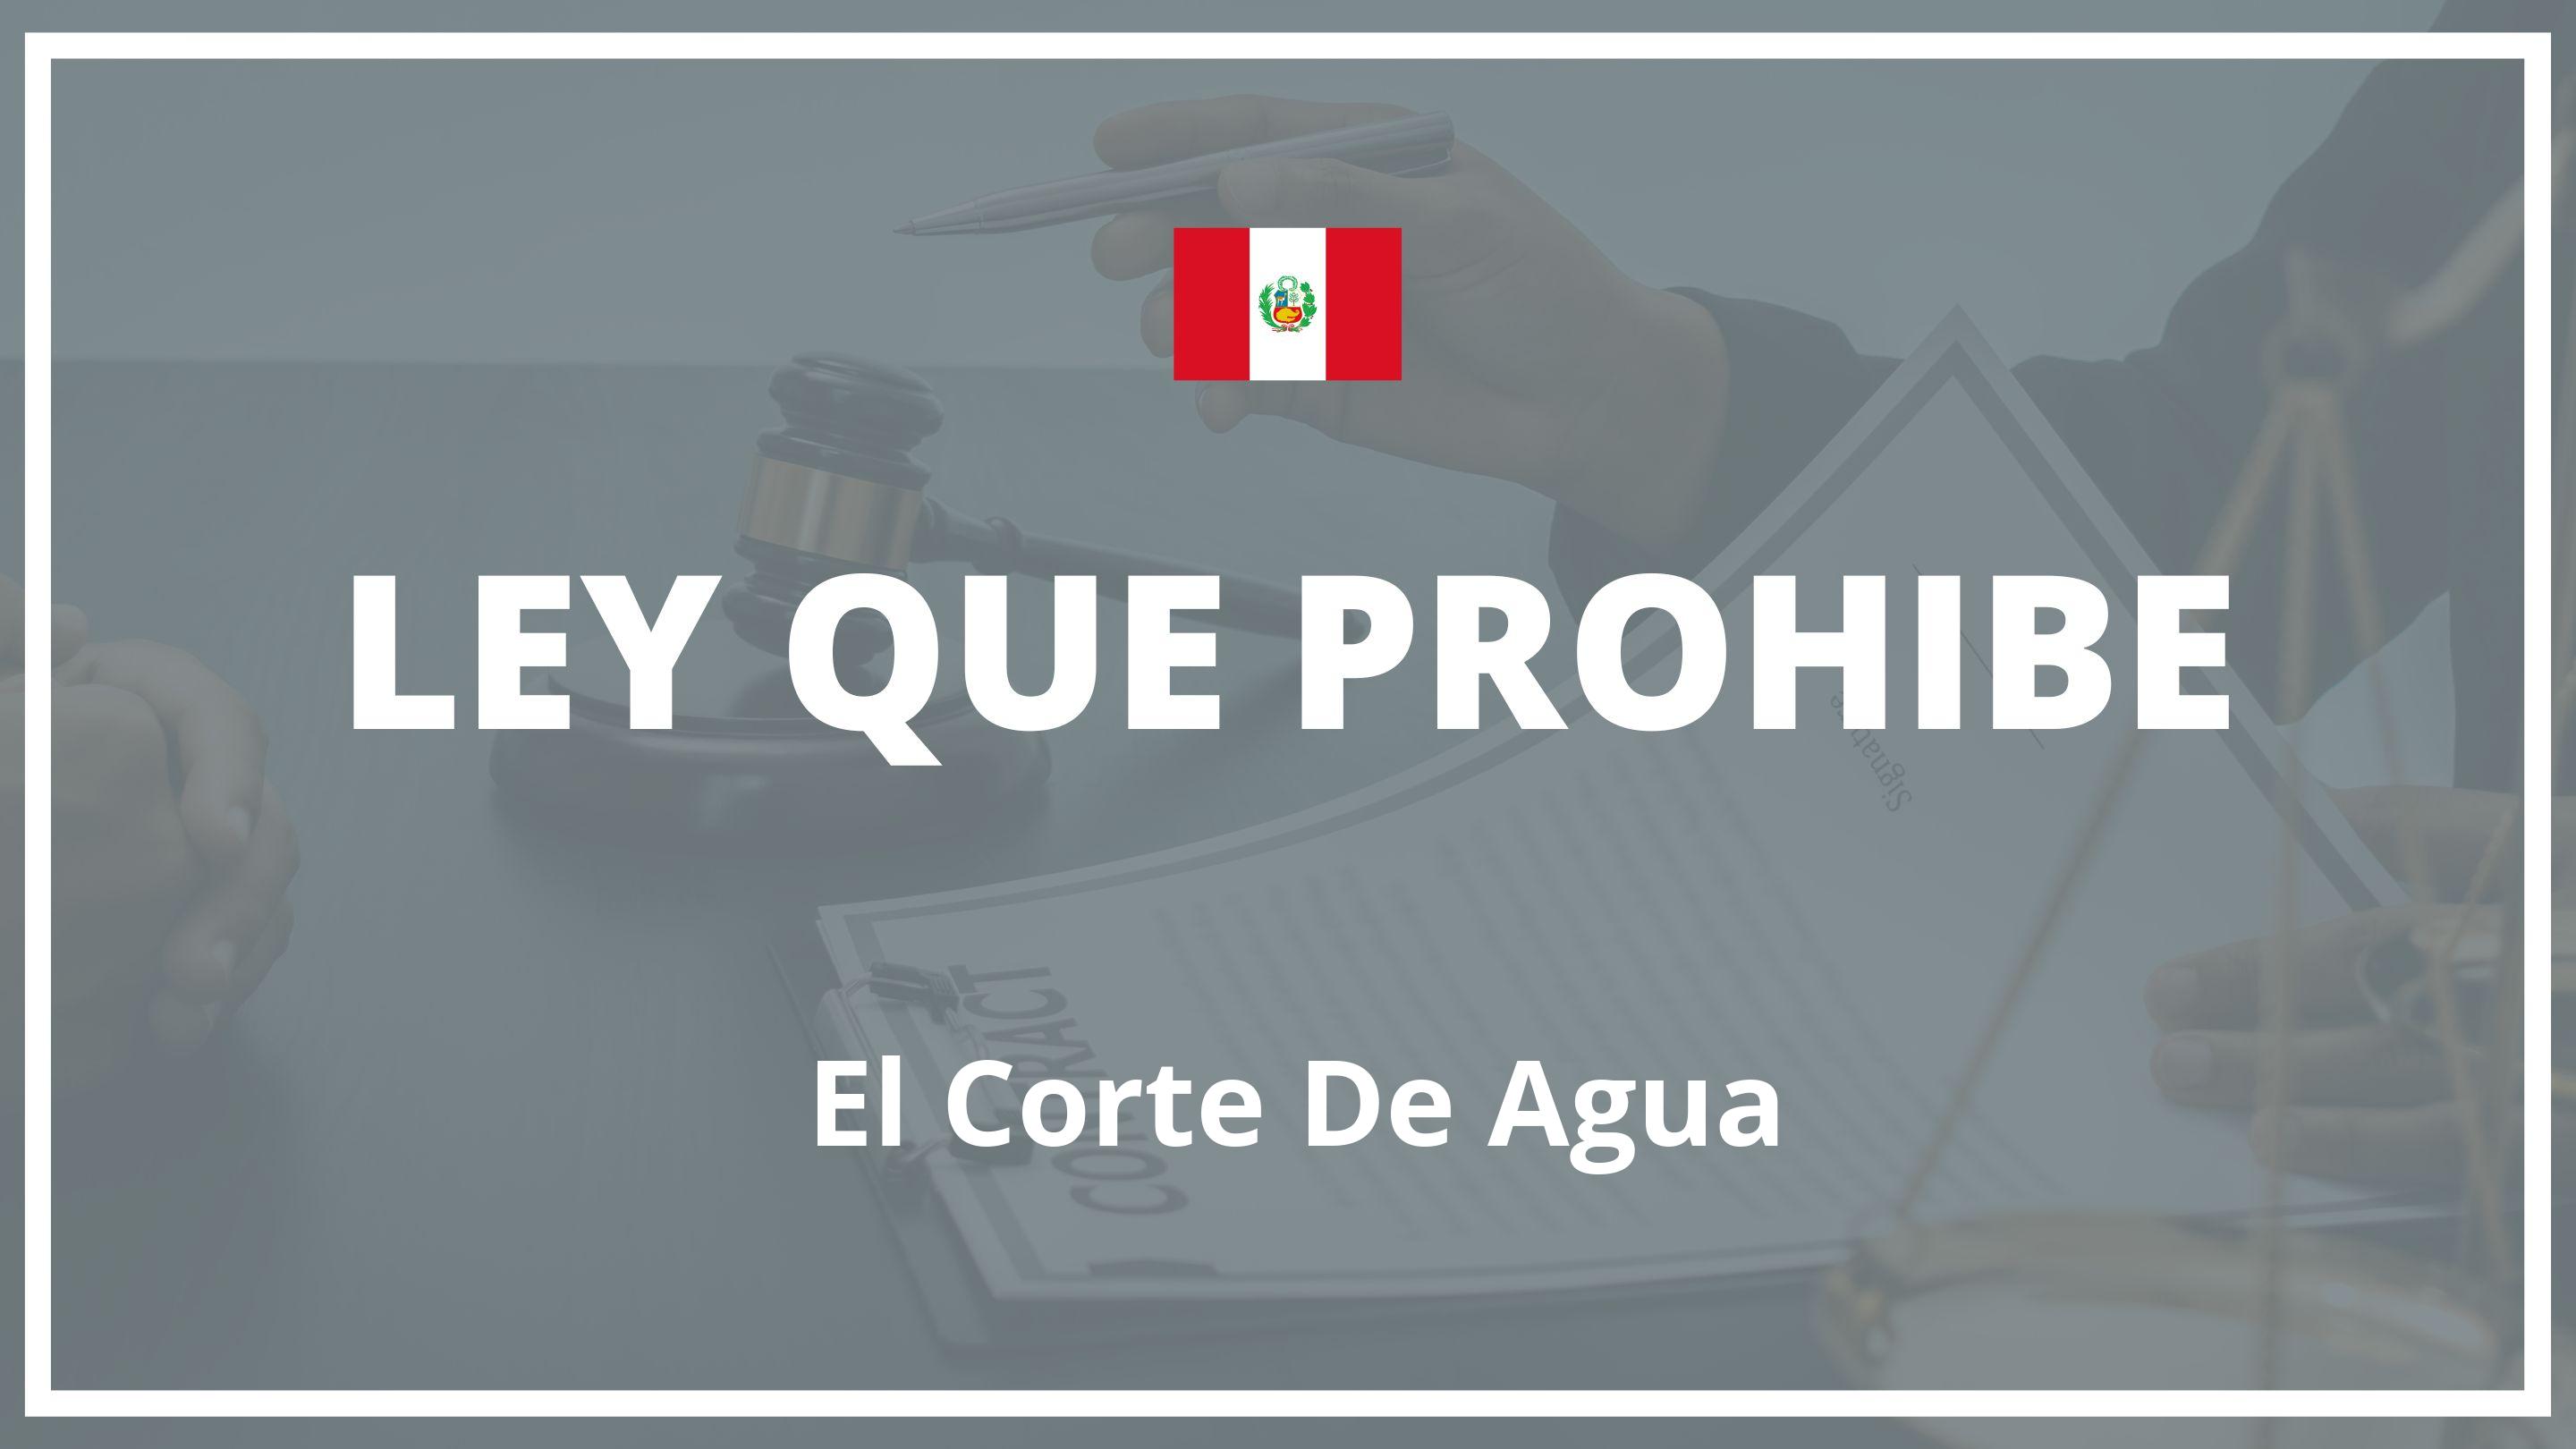 Ley que prohibe el corte de agua Peru